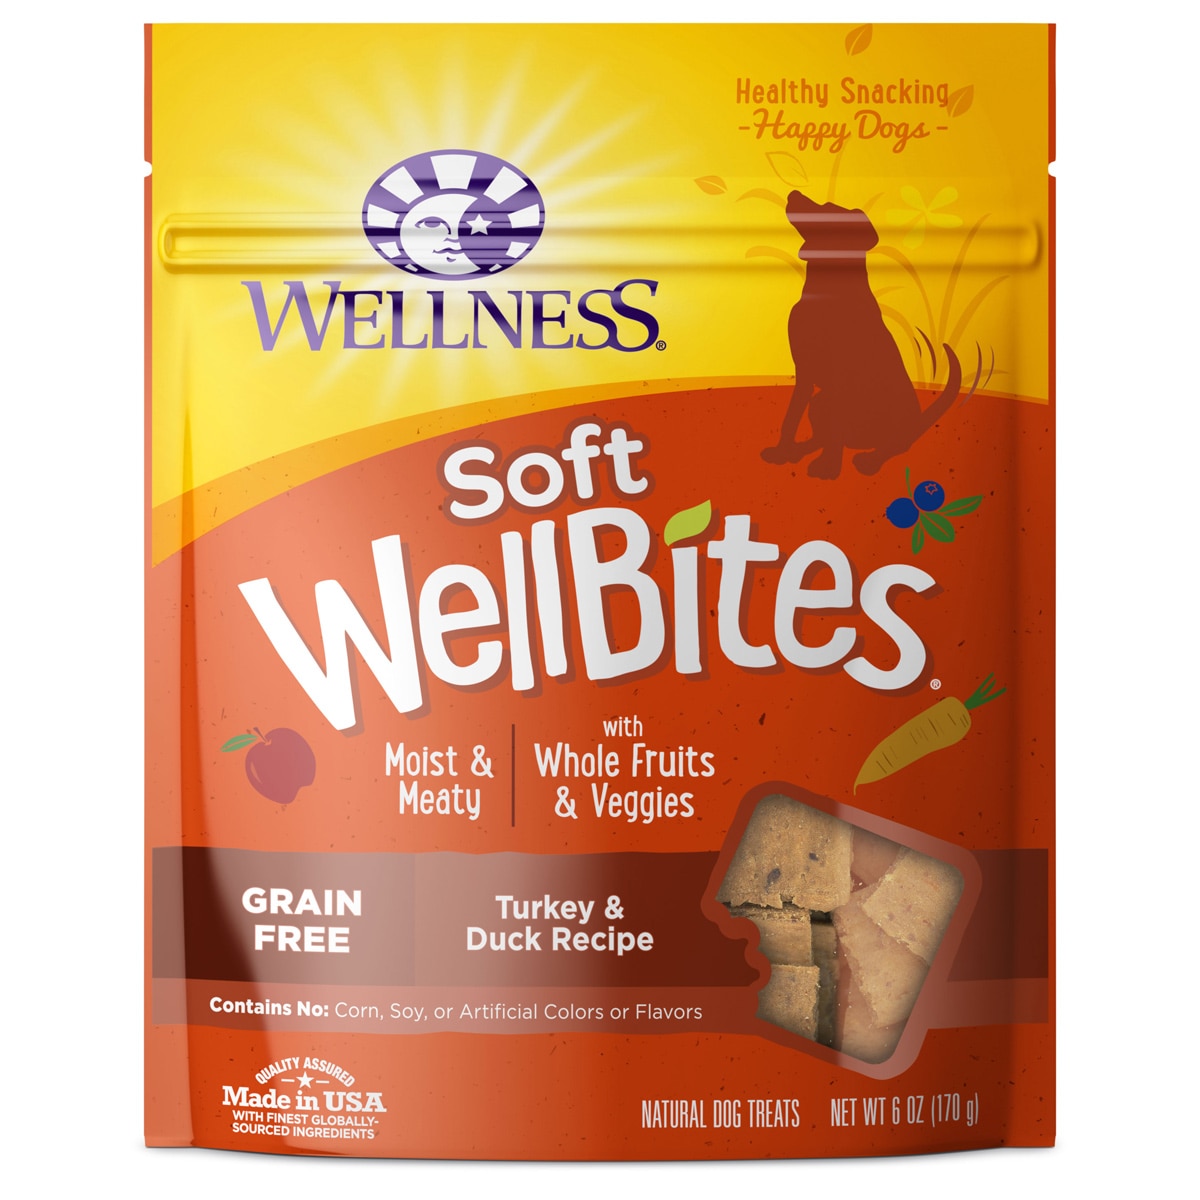 wellness wellbites